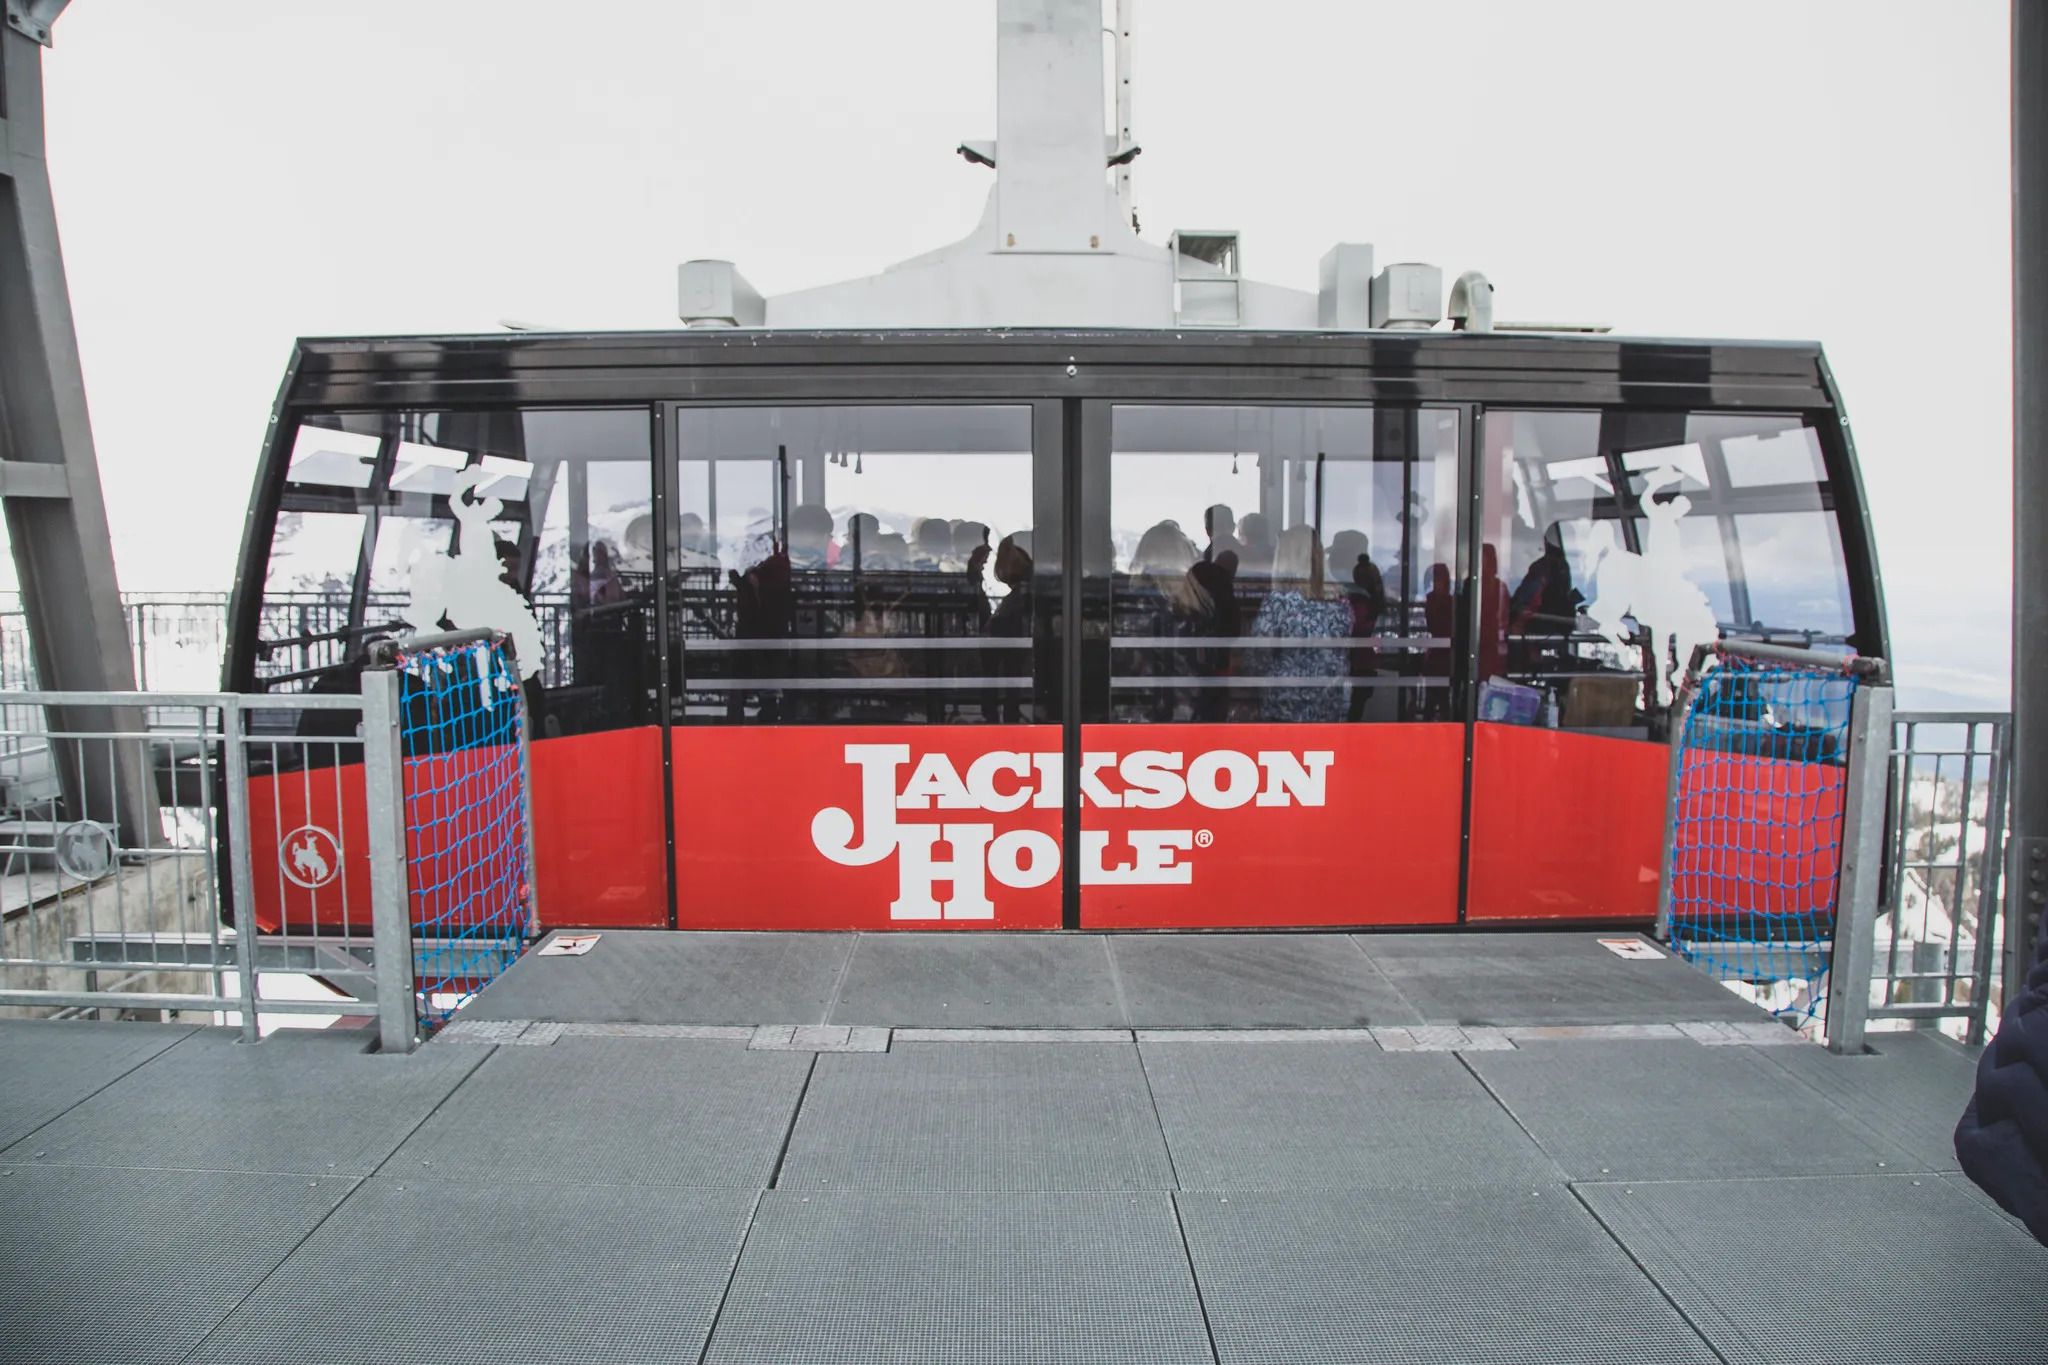 Jackson Hole Maountain tram